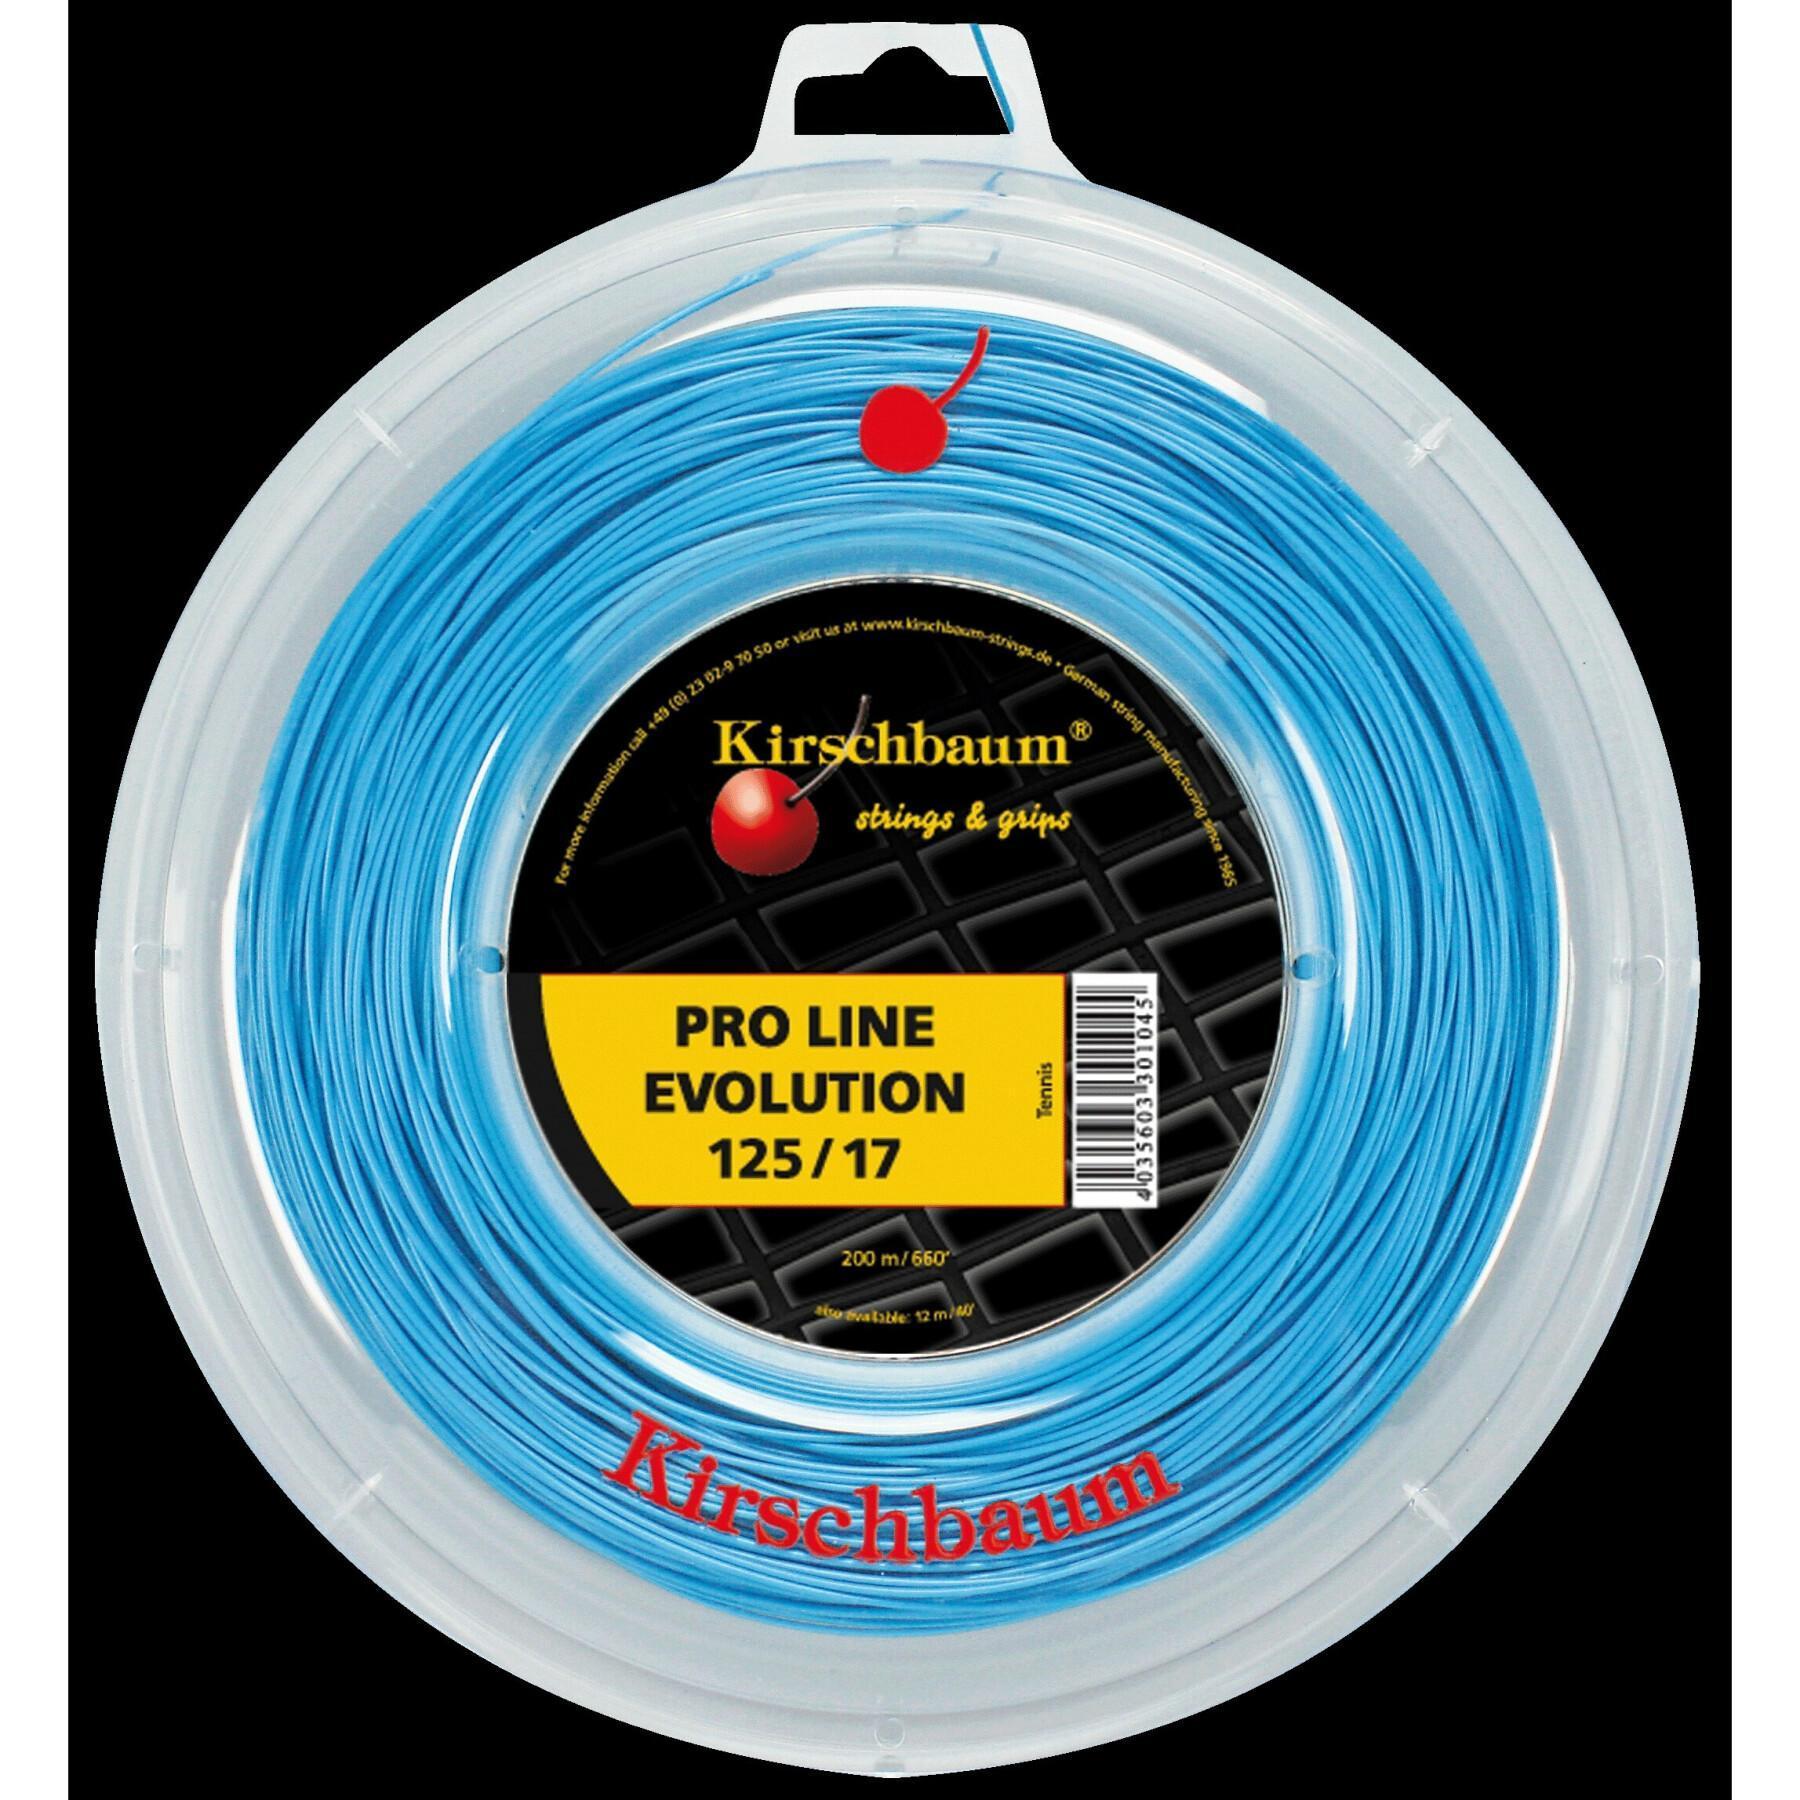 Cuerdas de tenis Kirschbaum Pro Line Evolution 200 m